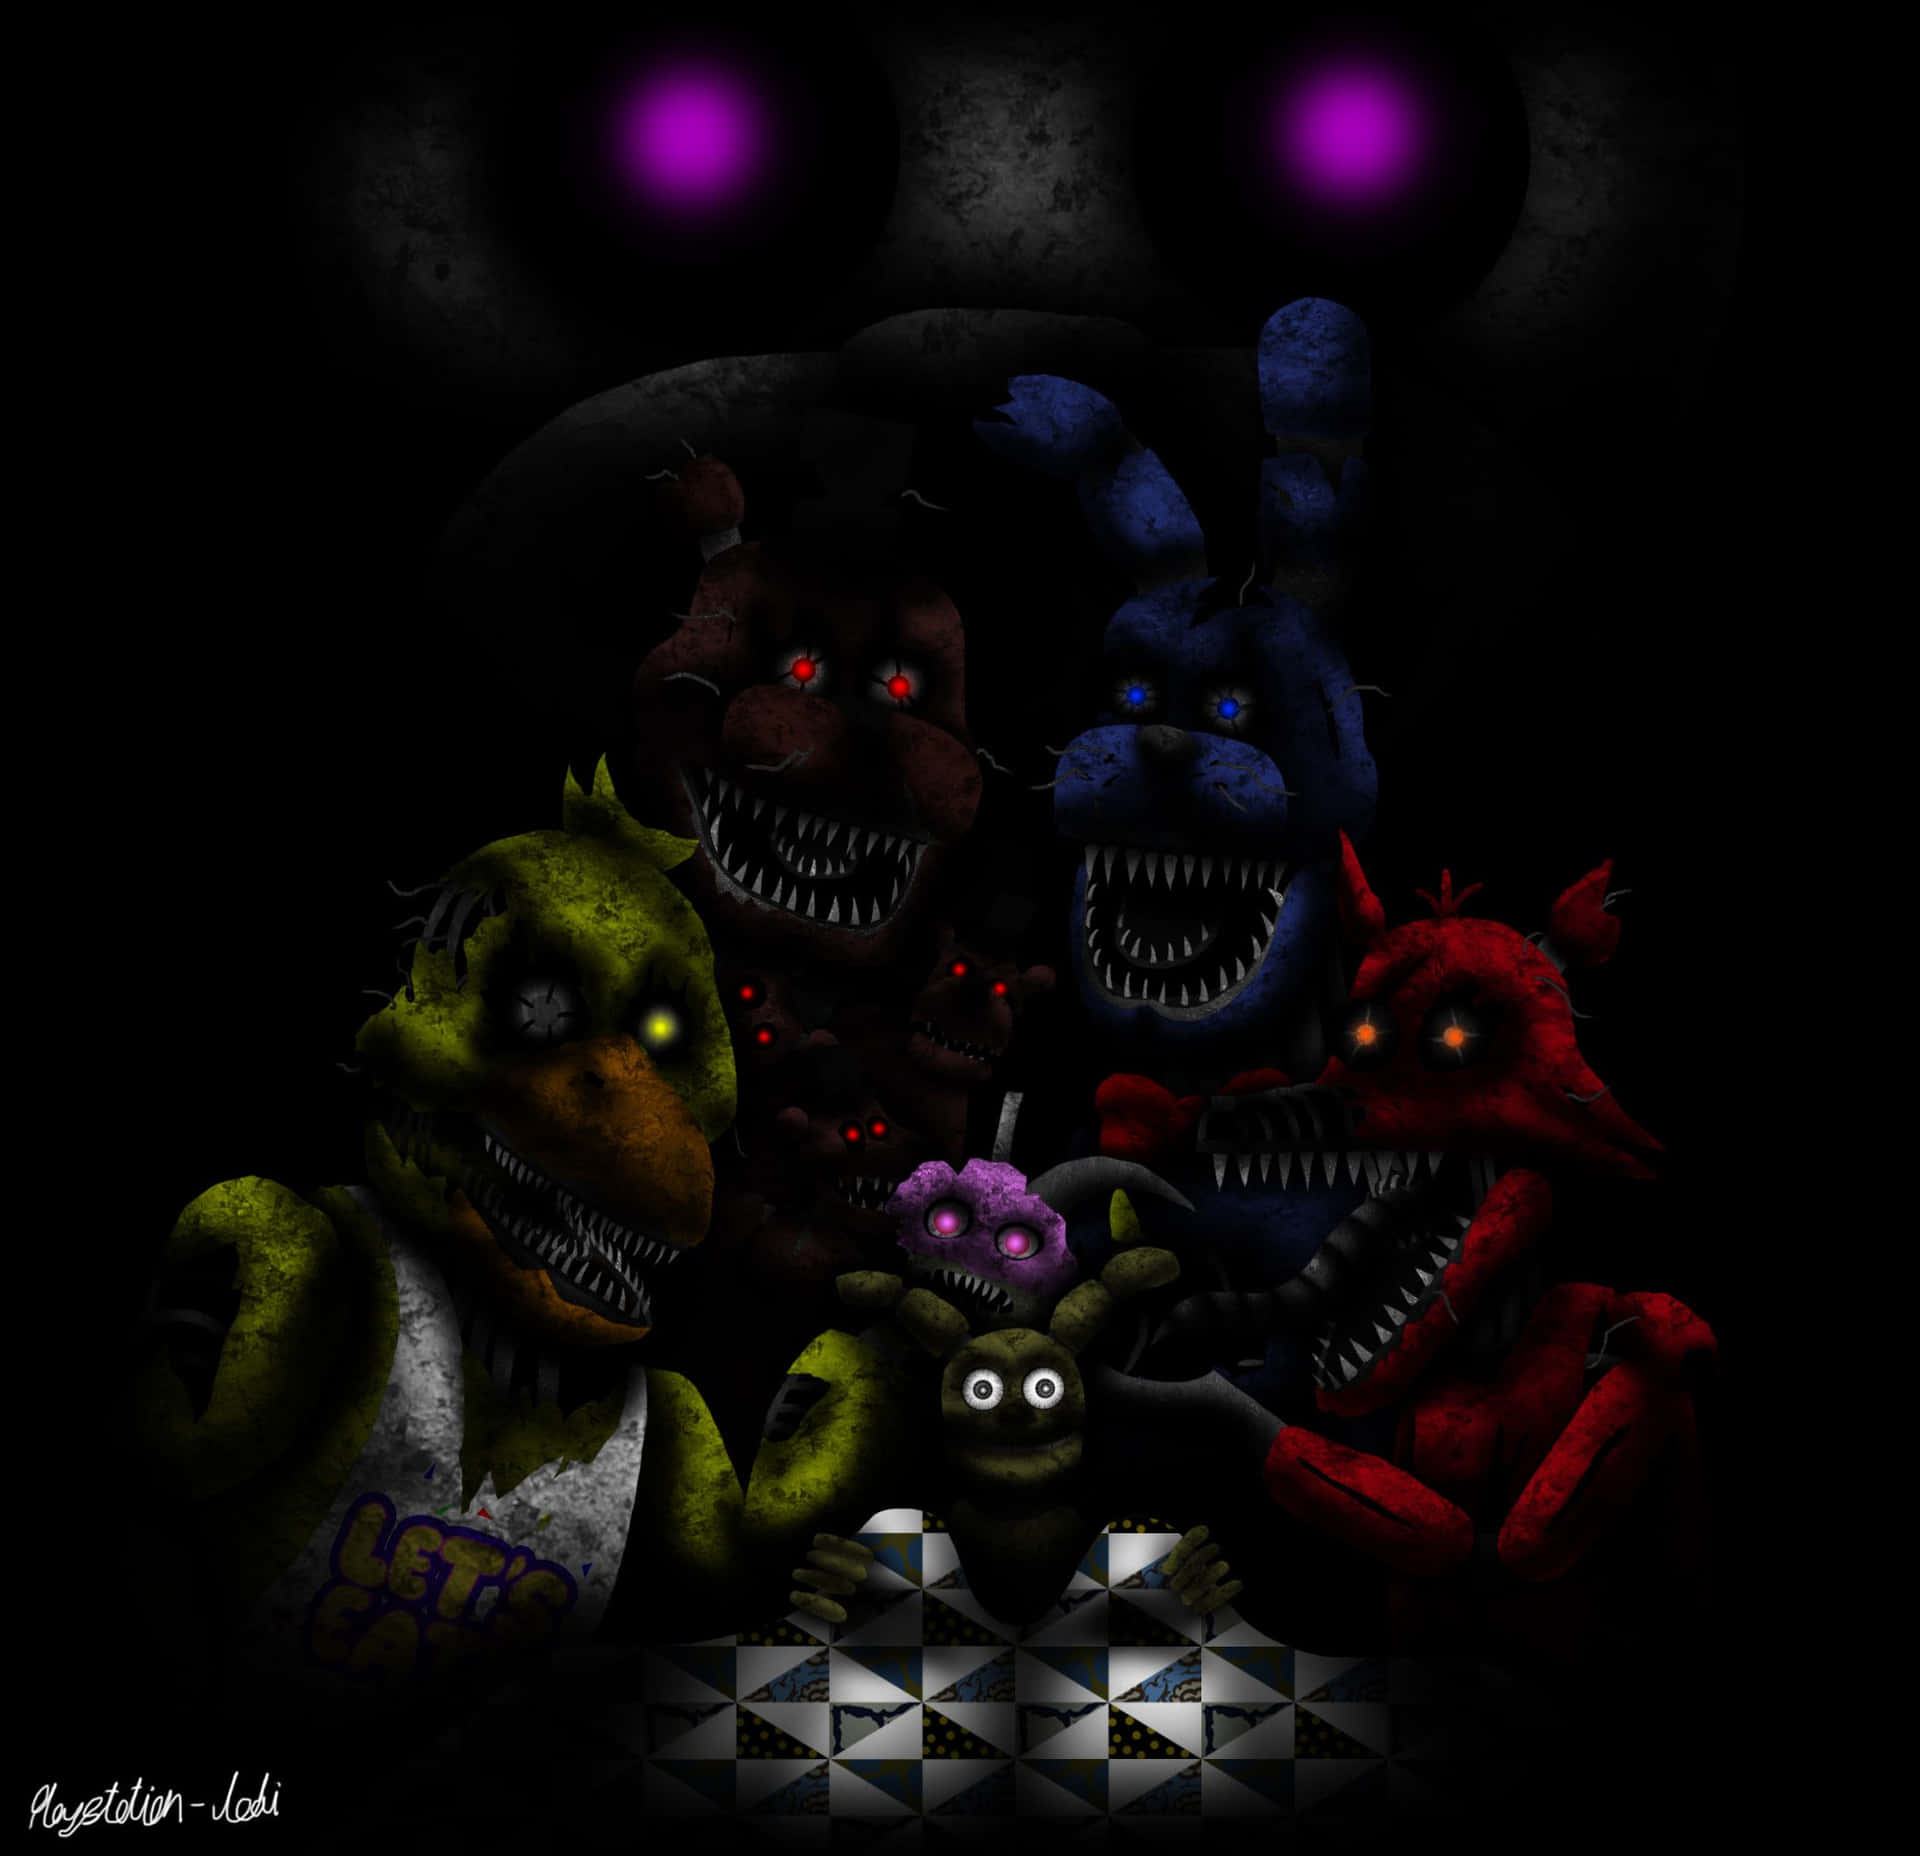 Personagensassustadores De Fnaf Na Imagem Escura